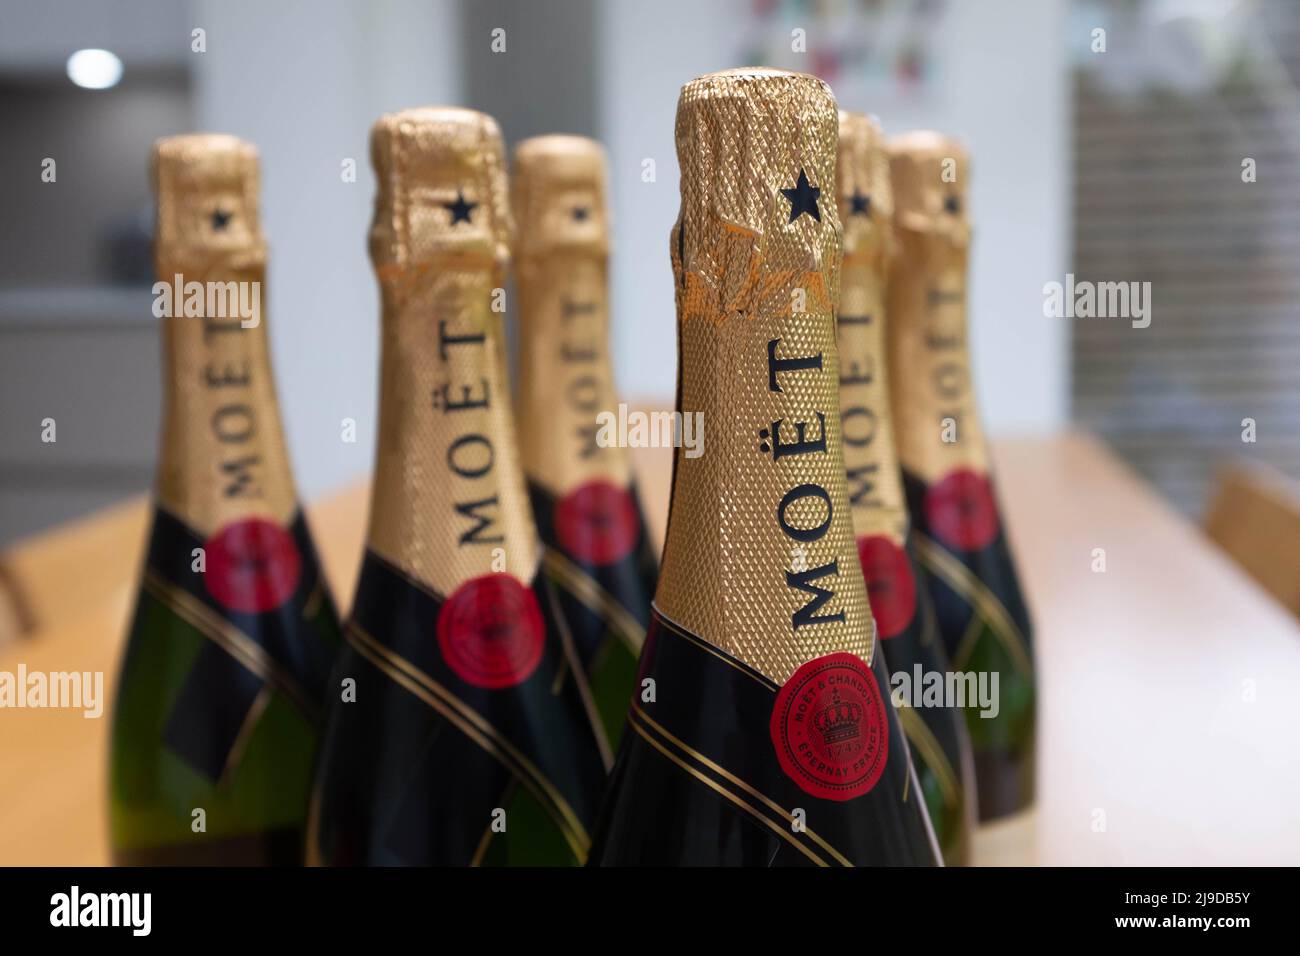 Champagner-Flaschen von MOET Chandon Stockfoto